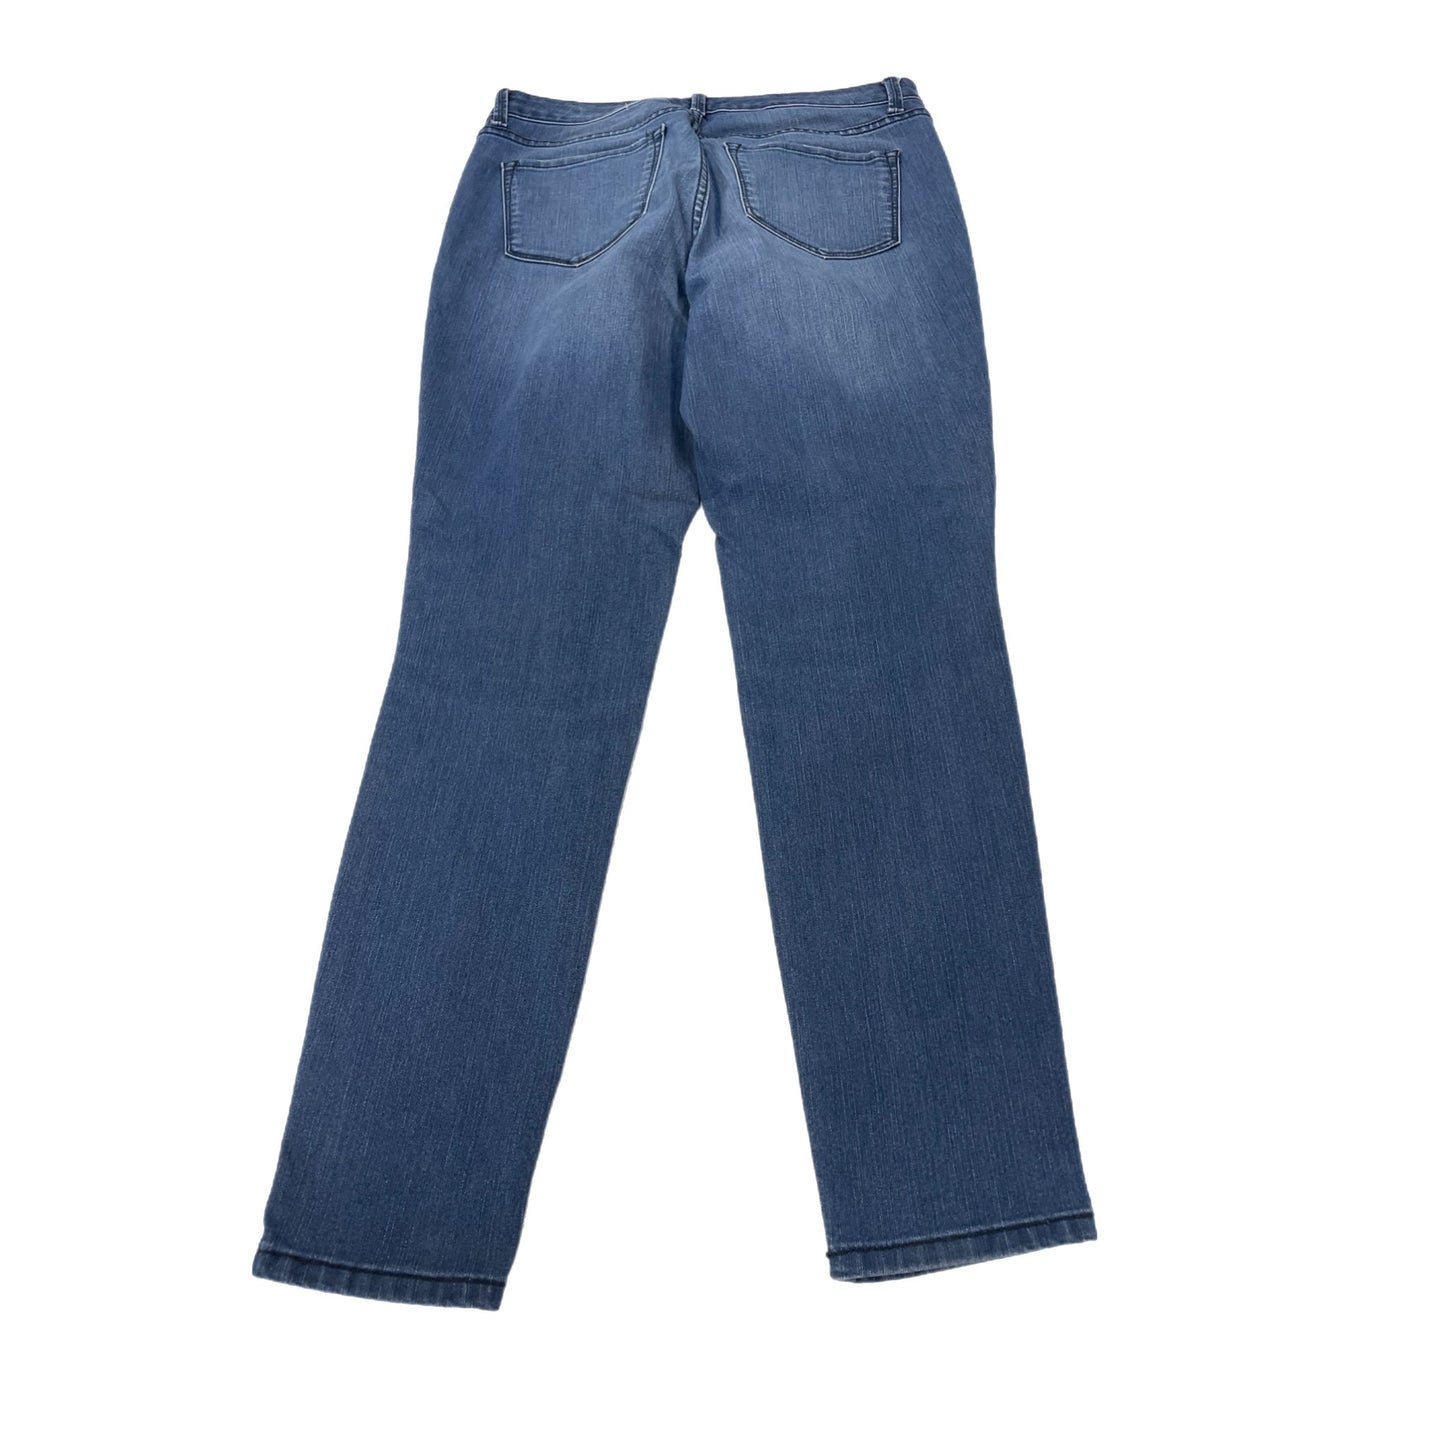 Jeans Skinny By Nine West  Size: 8